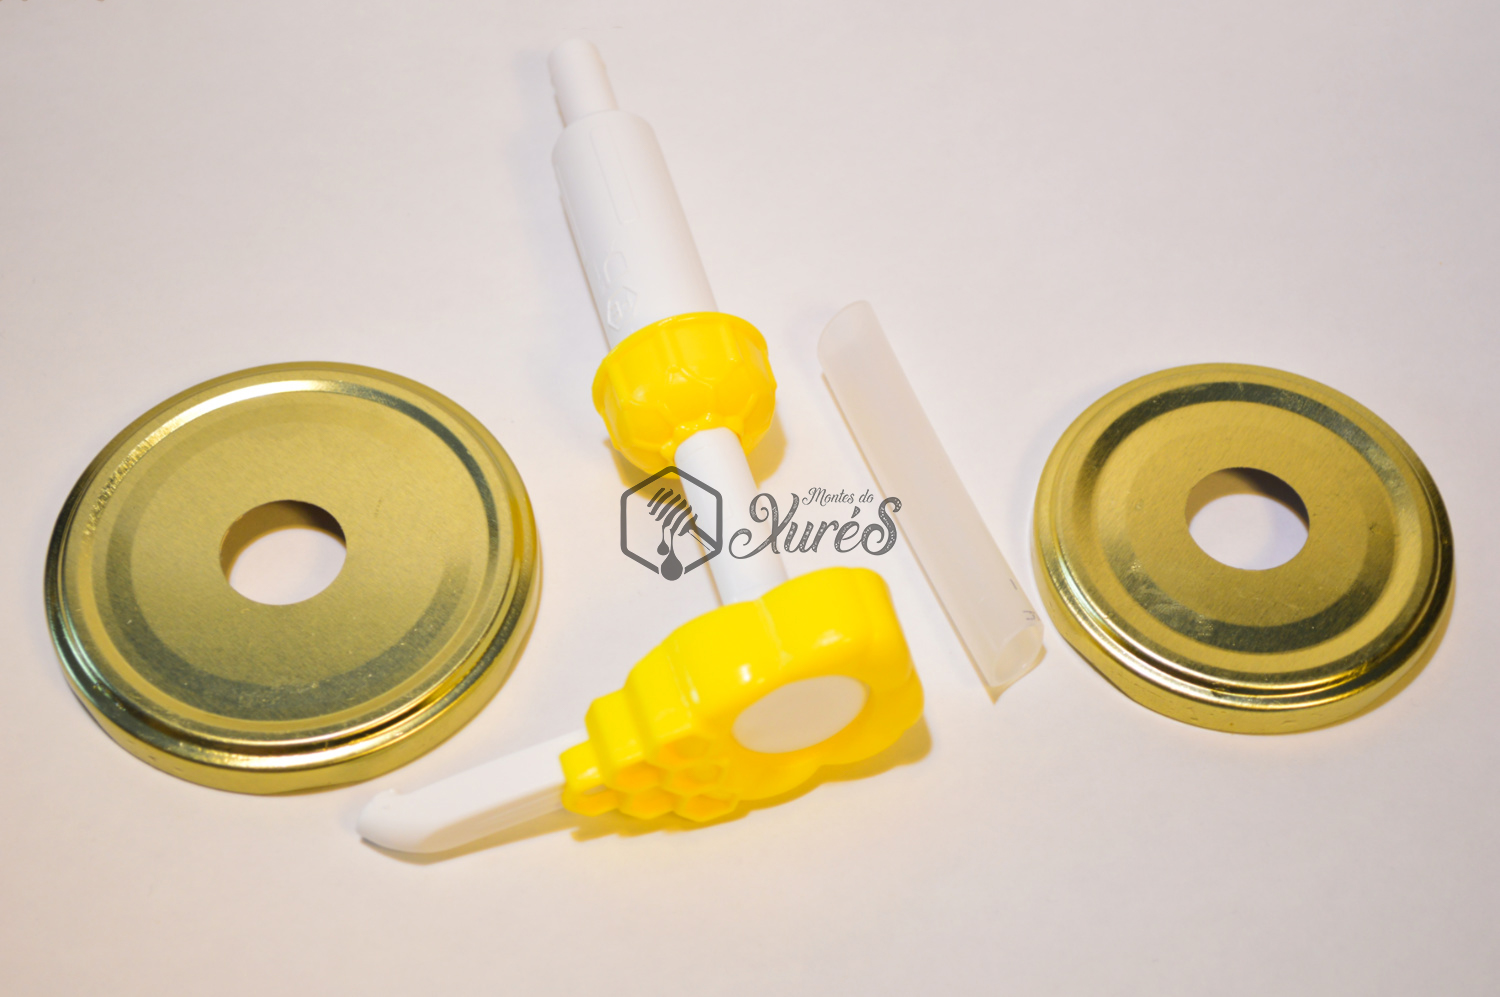 Dosificador dispensador de miel de cristal 300 ml luka 1.45 euros